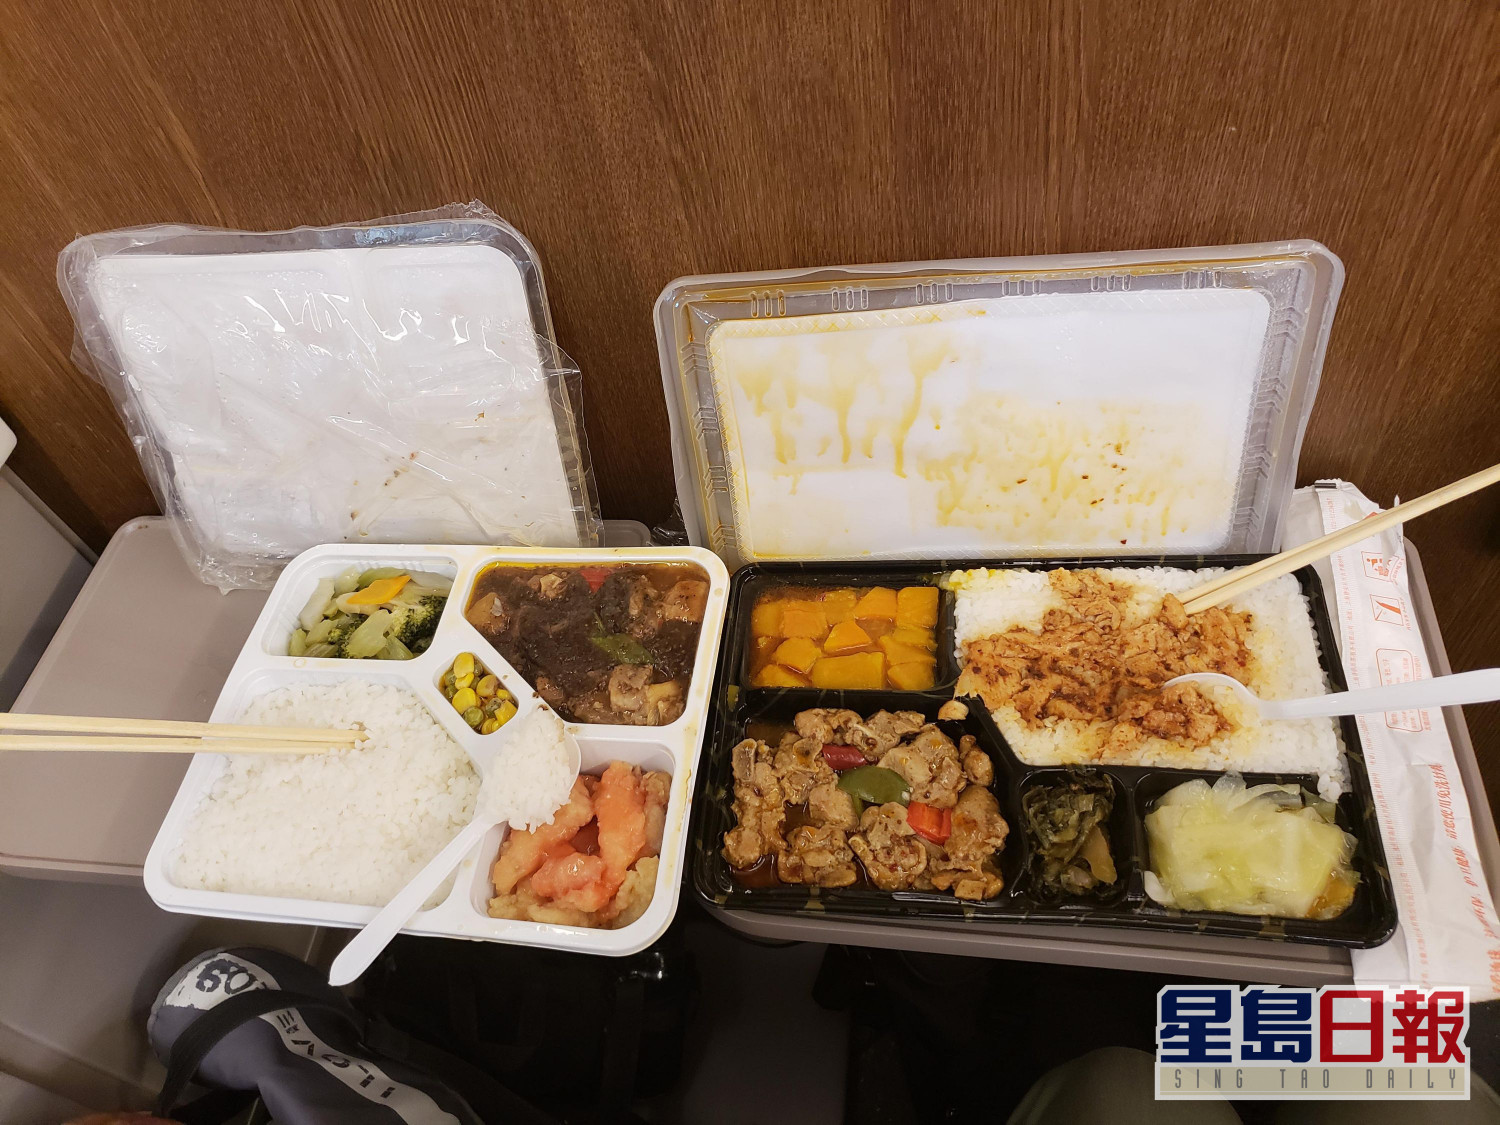 天津餐廳推女版飯盒飯餸減量價錢不減 星島日報